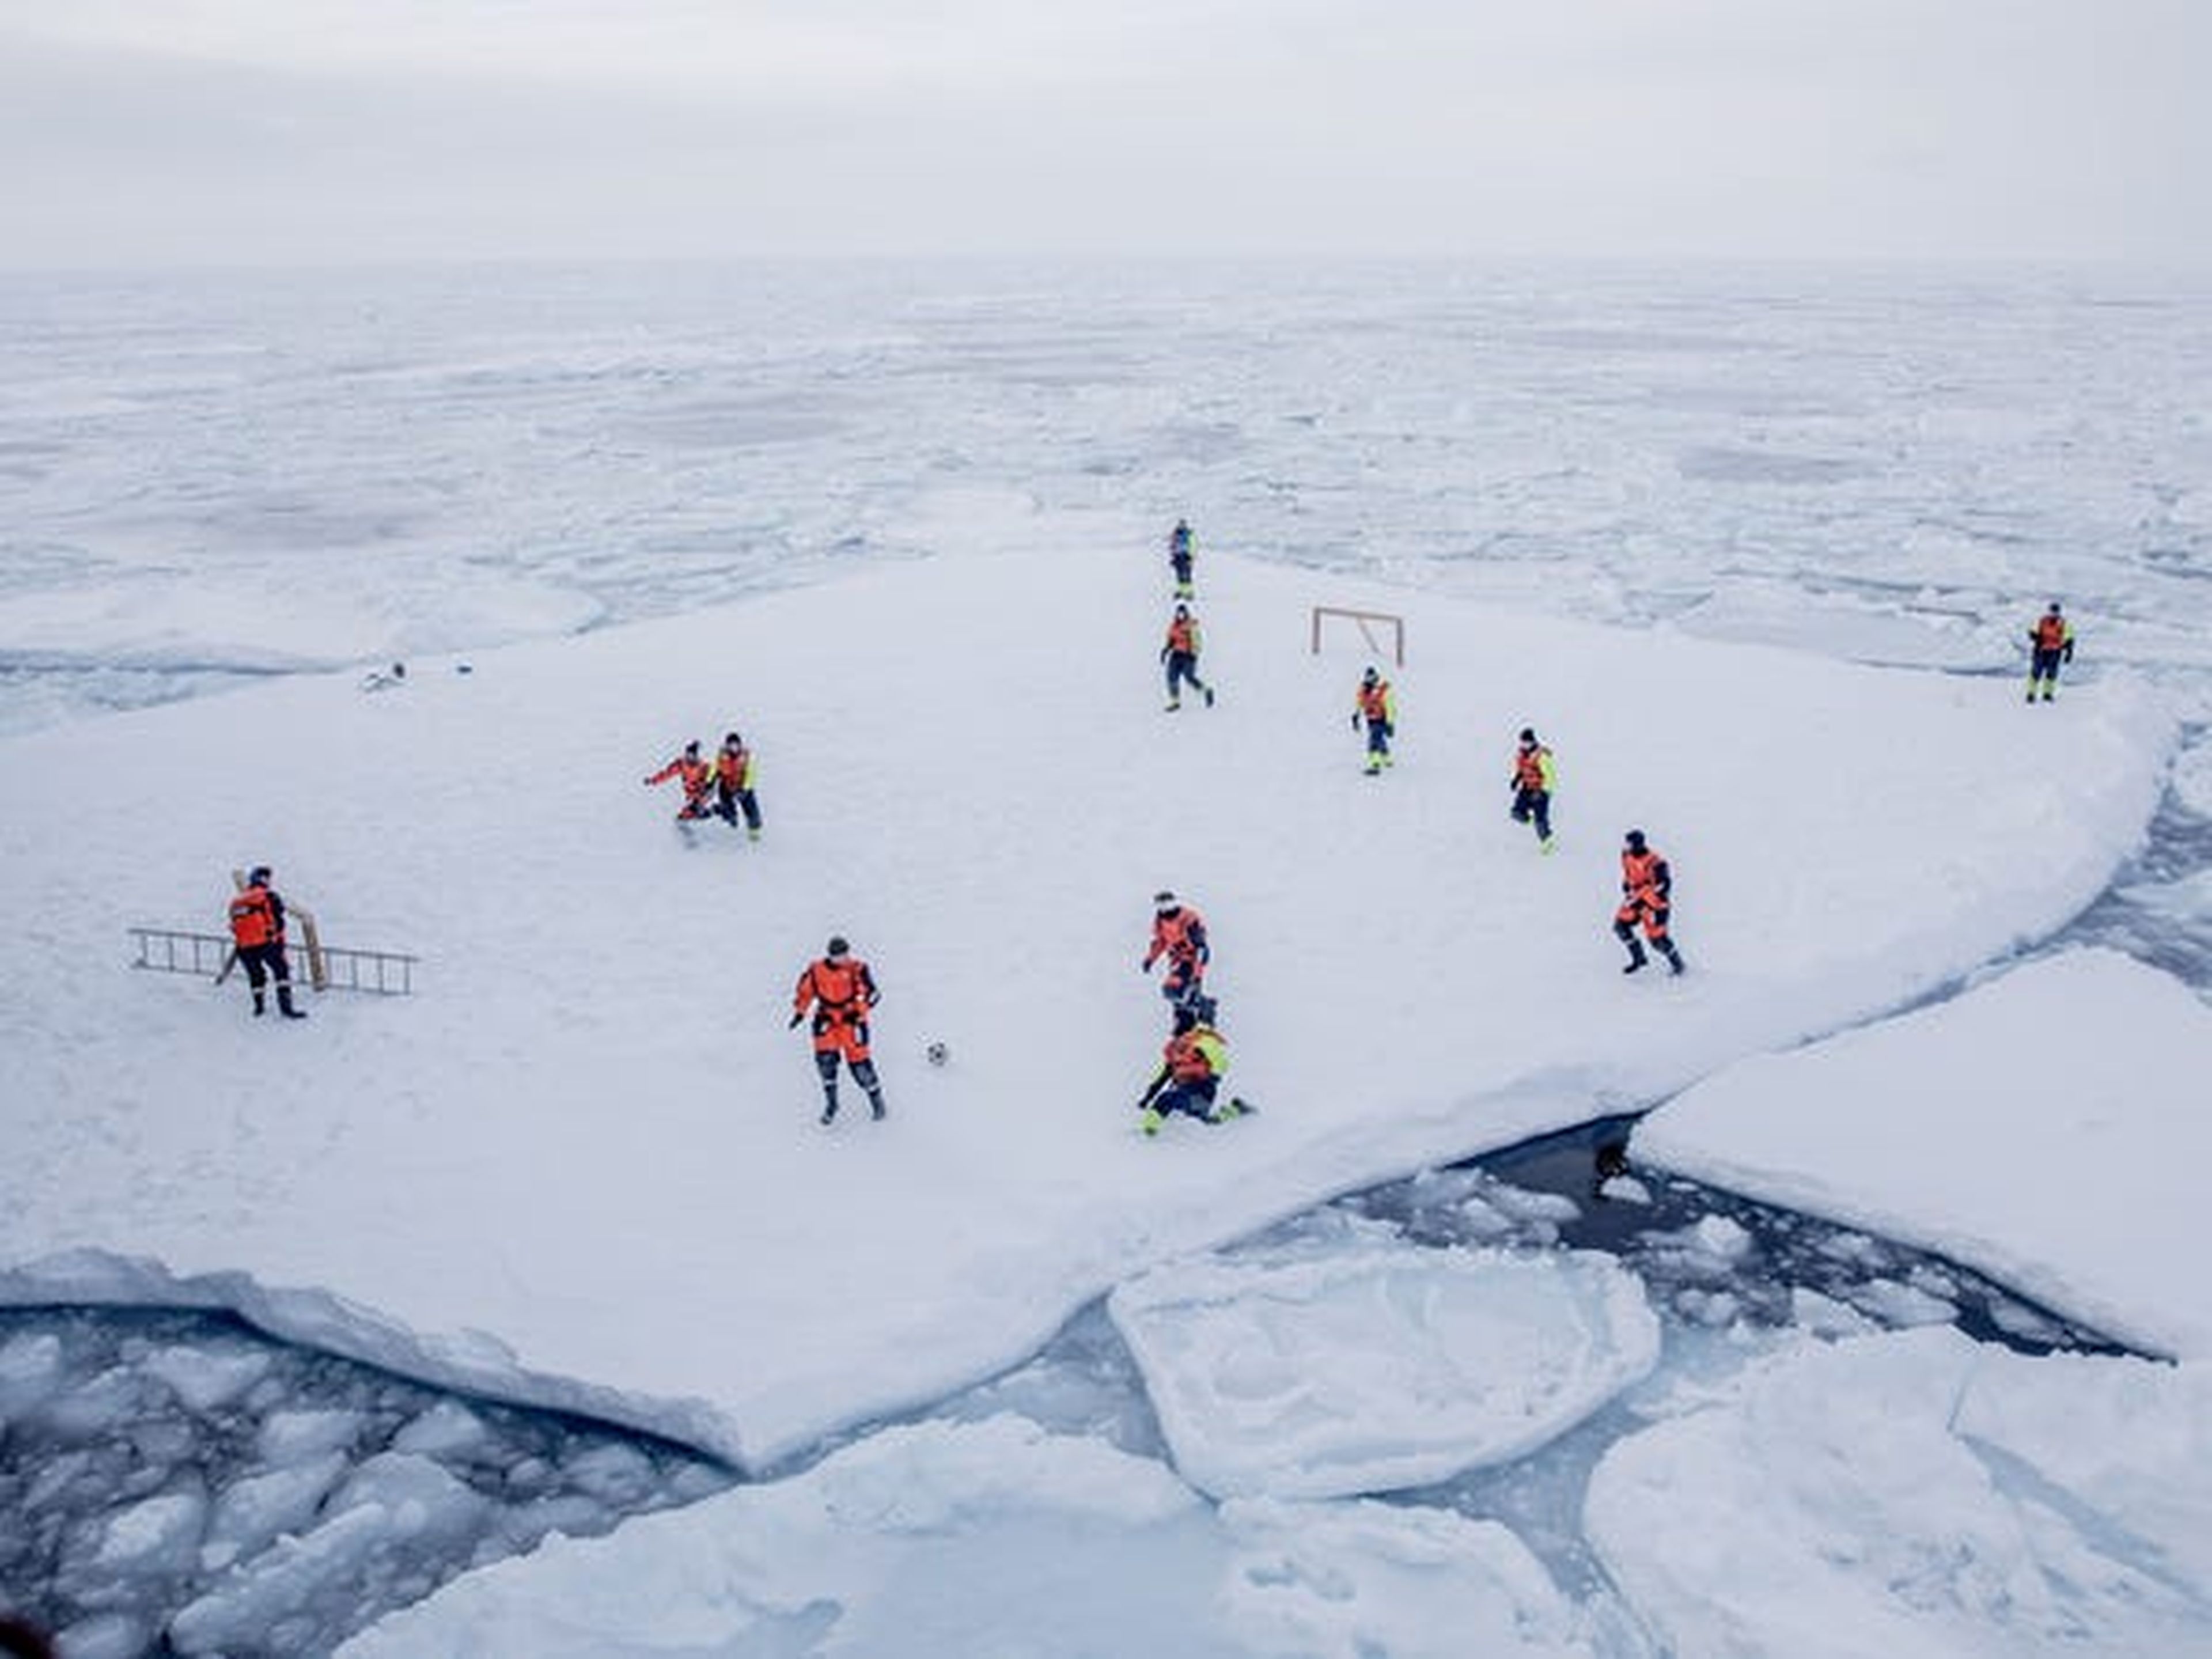 Puedes hacer un kickabout sobre el hielo. Eso sí asegúrate de estar armado por si aparecen osos polares.